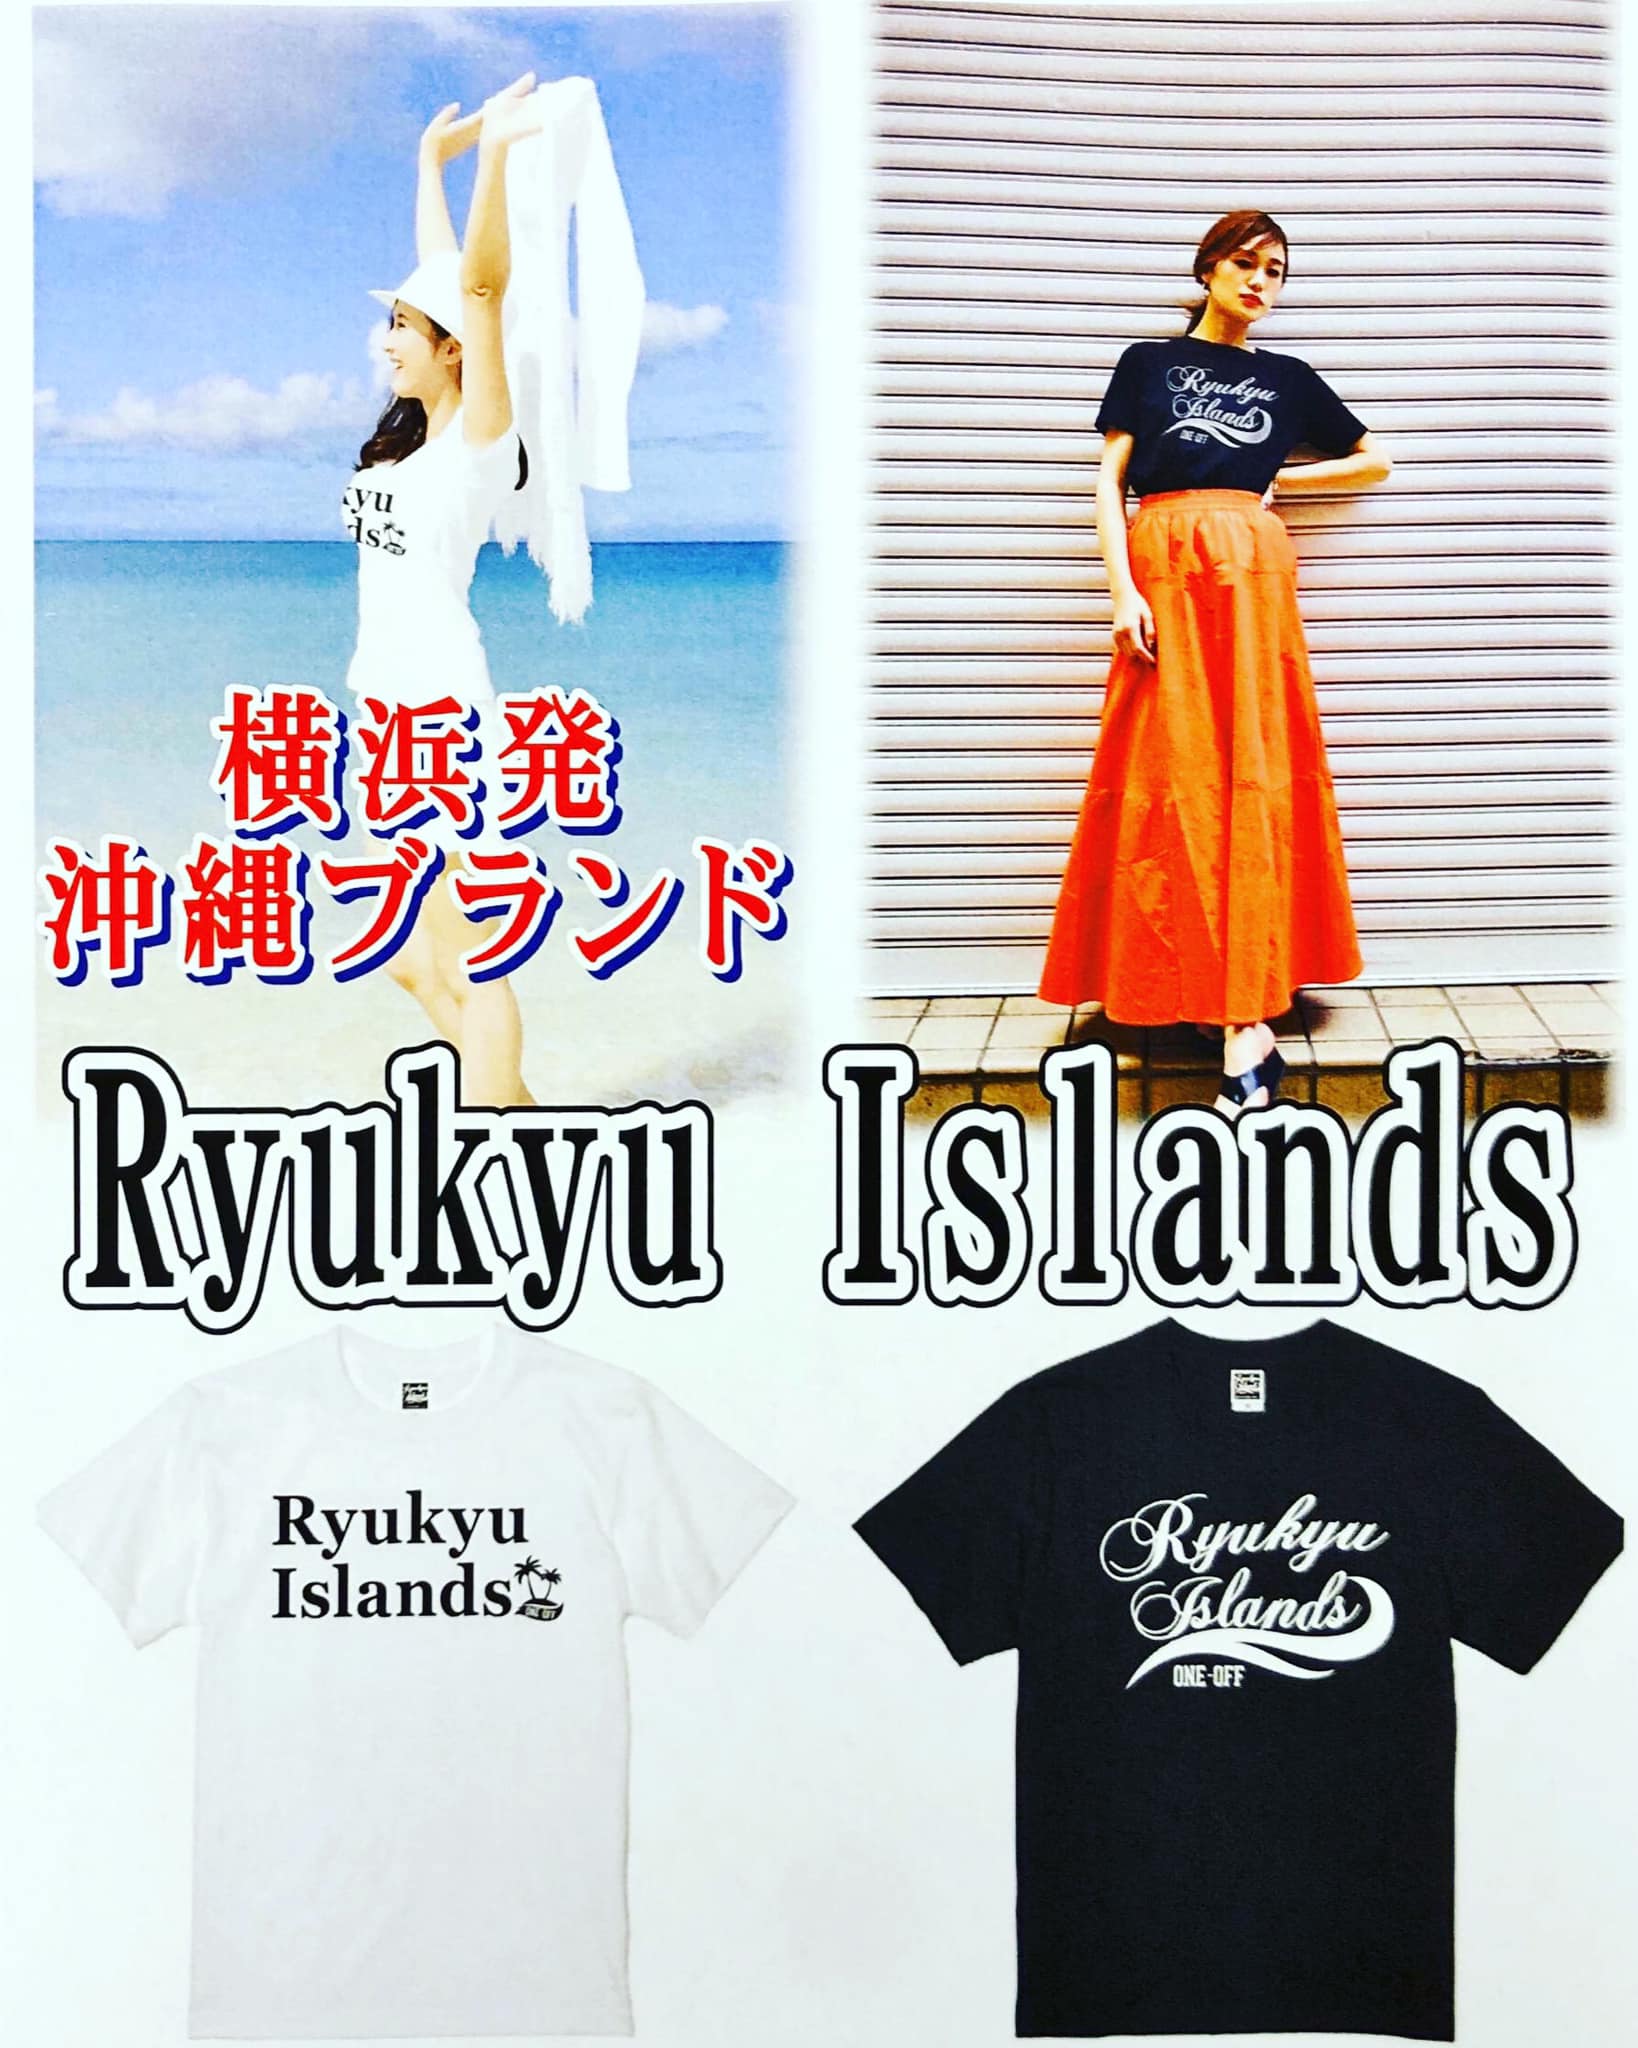 横浜発のウチナーブランド「Ryukyu Islands」登場